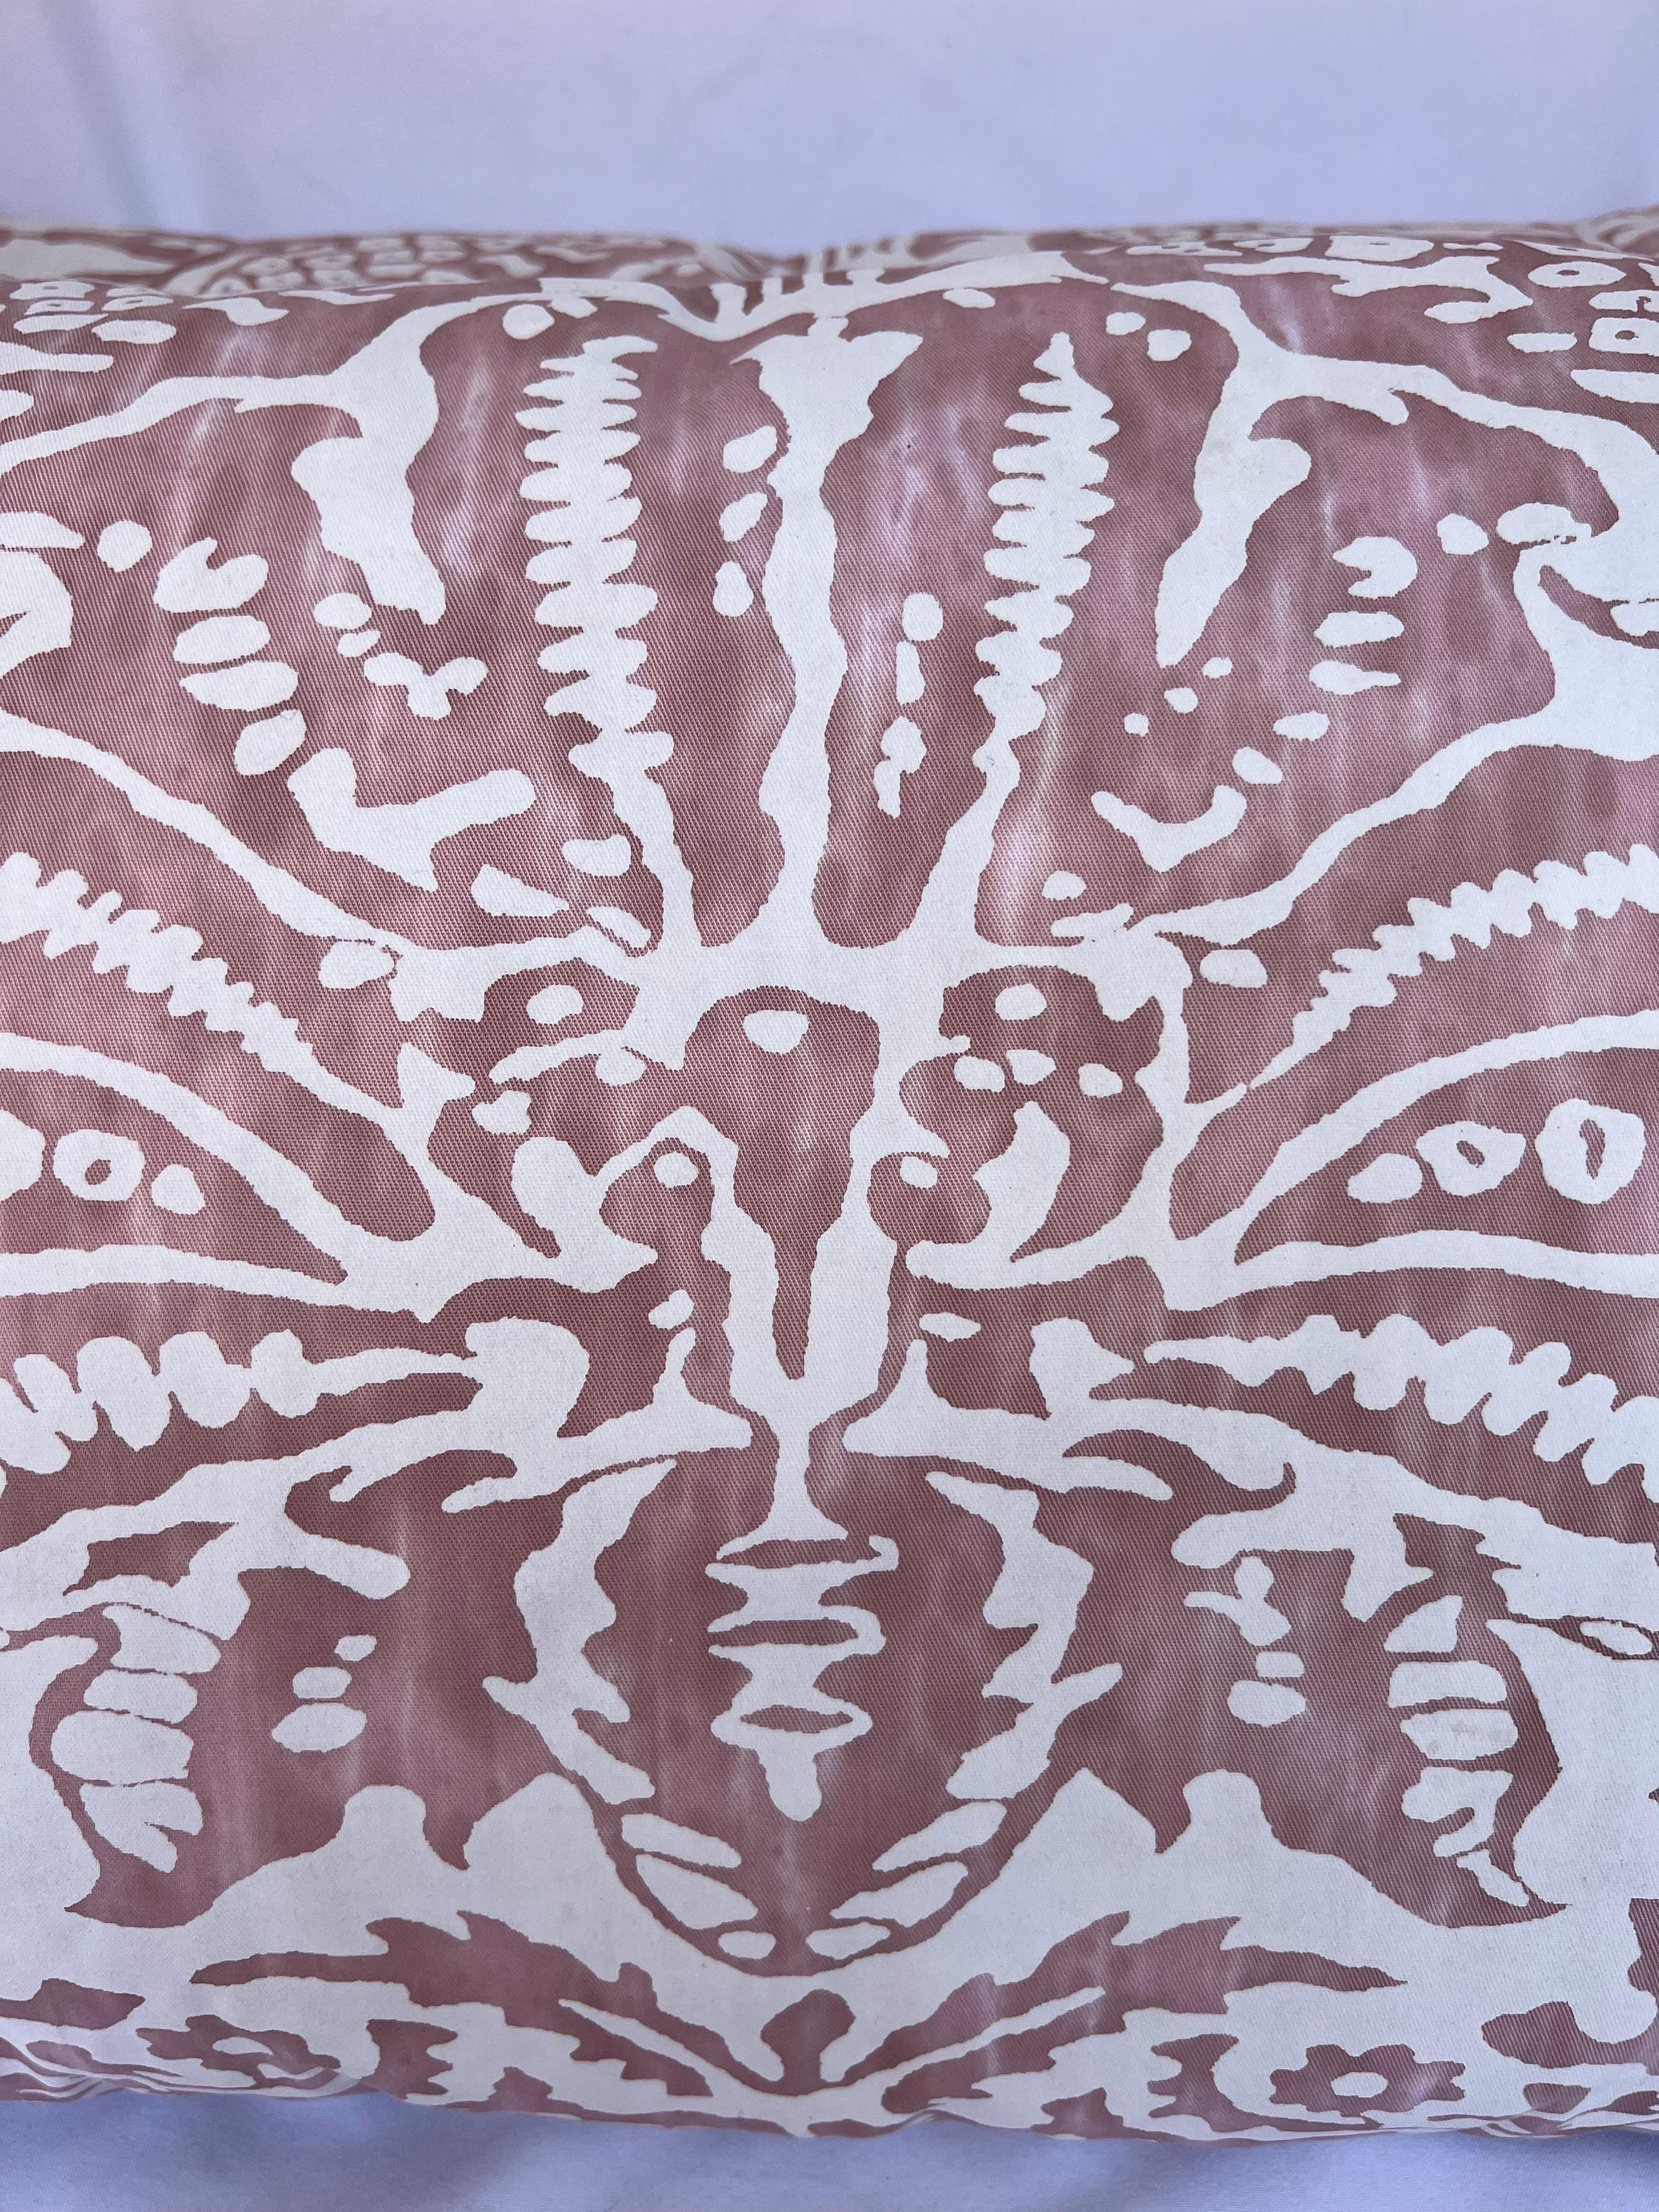 Ein Paar Kissen mit rosa-weißem Fortuny-Muster auf der Vorderseite und einer weichen, rosafarbenen Rückseite.  Dauneneinsätze, Reißverschlüsse.